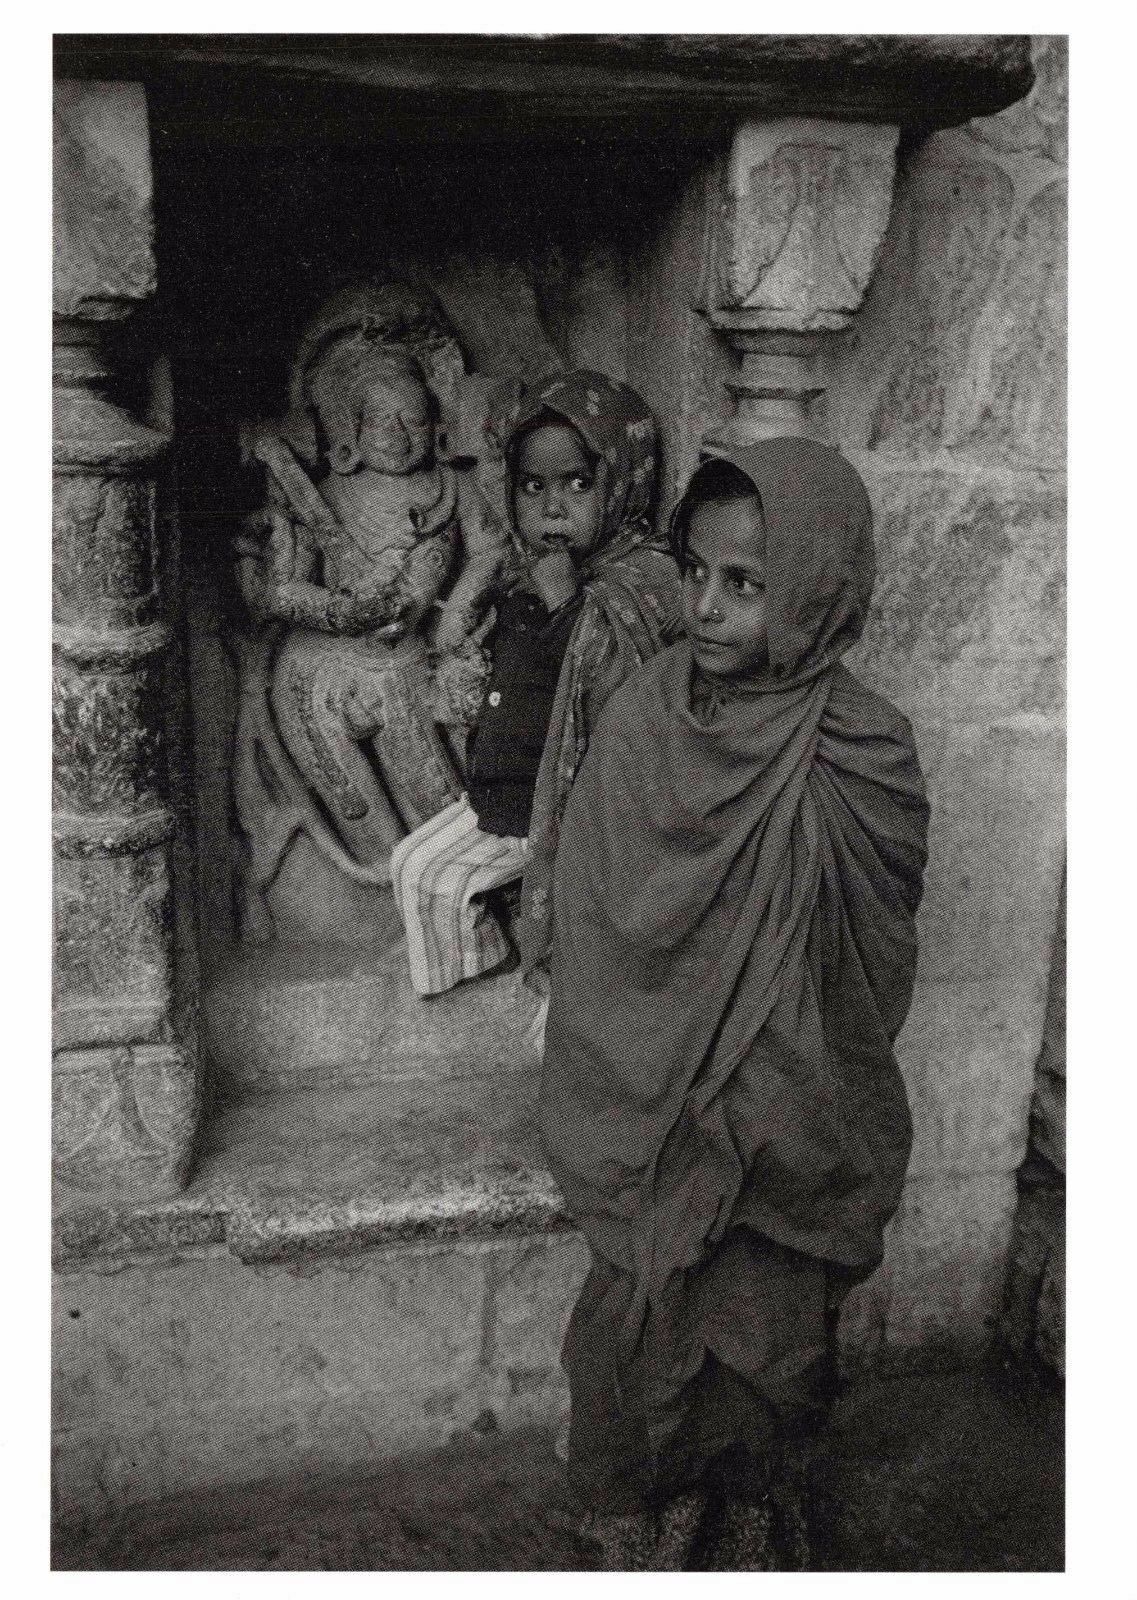 Postcard Temple Wall, Eklingji, Rajasthan, INDIA 1984 by Sam Tata BW49